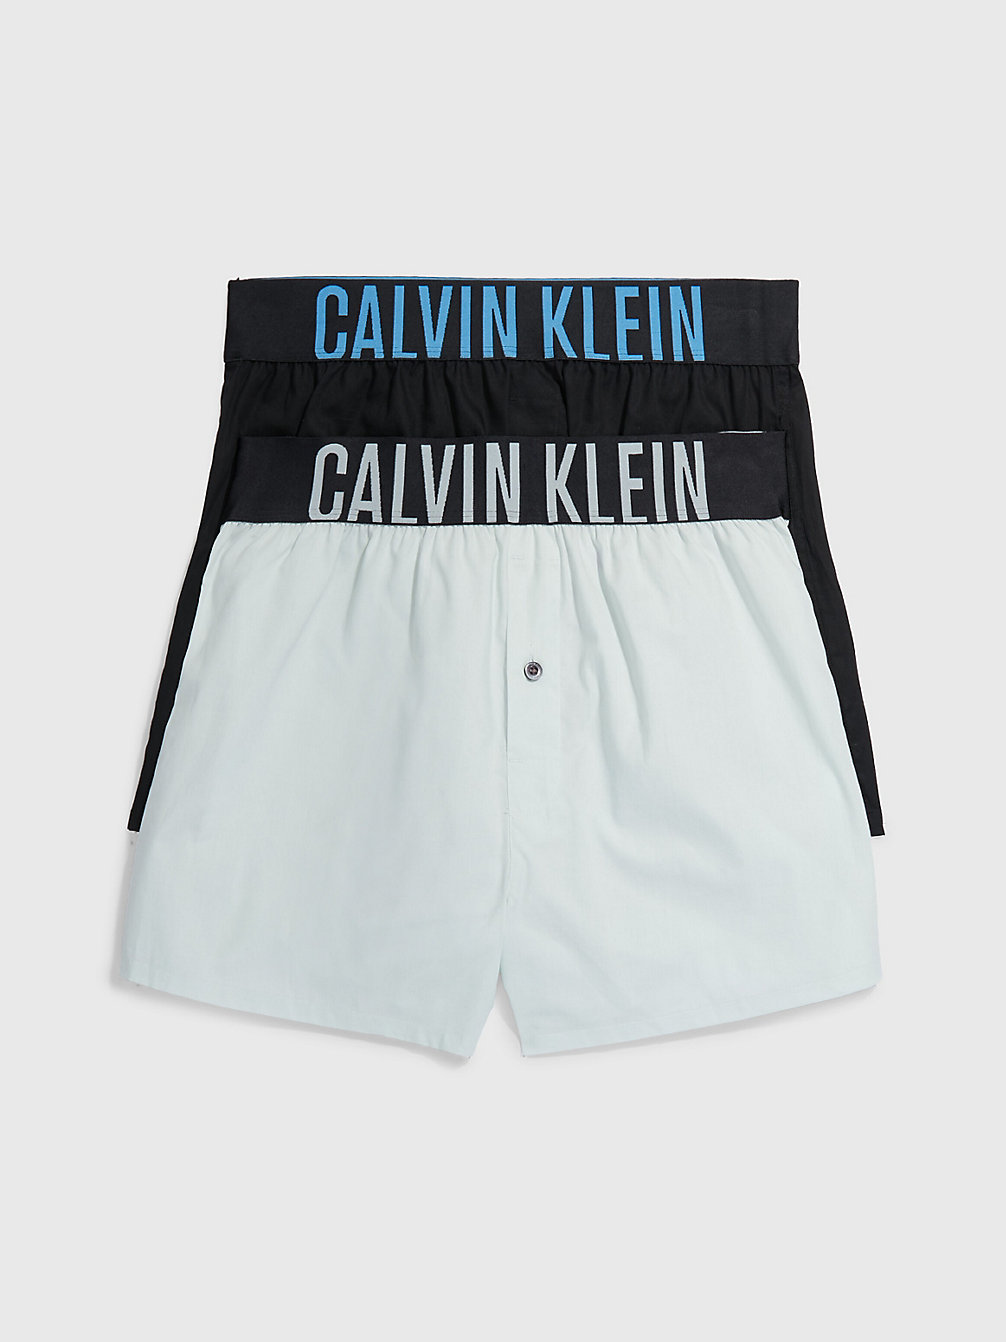 Boxer Slim In Confezione Da 2 - Intense Power > BLACK W/ SIGNATURE BLUE, DRAGON FLY > undefined uomo > Calvin Klein